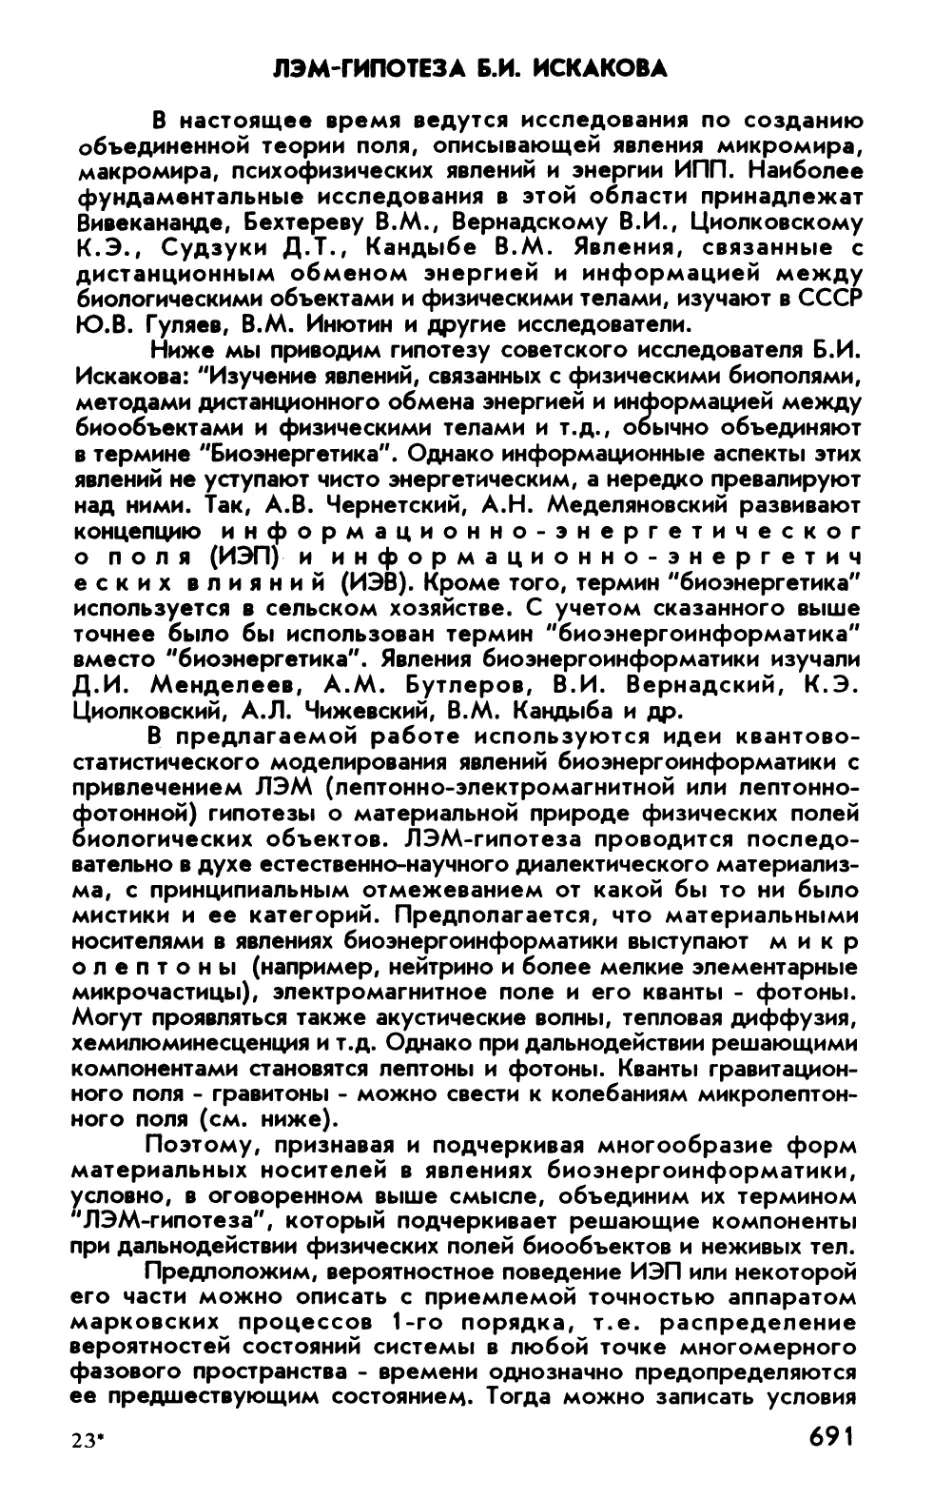 ЛЭМ гипотеза Б.И. Искакова